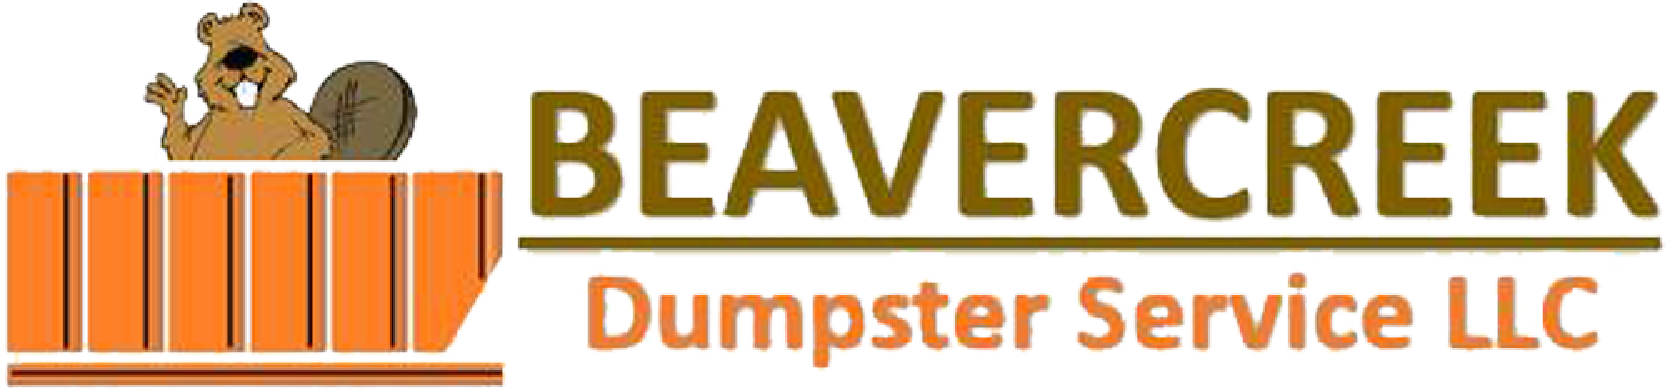 Beavercreek Dumpster Service Logo_full color